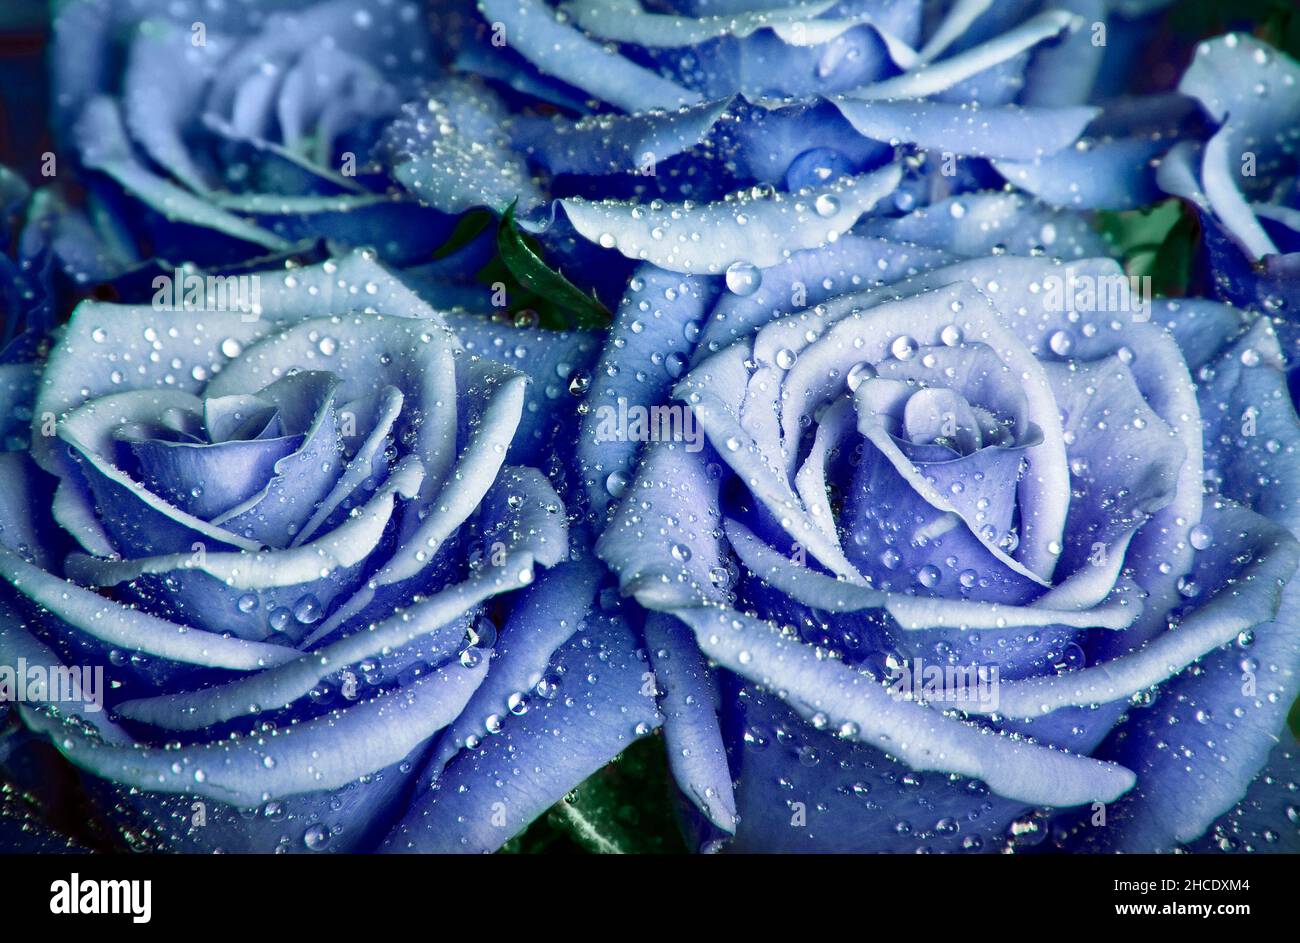 Romantische blaue Rosen mit Wassertropfen Stockfotografie - Alamy